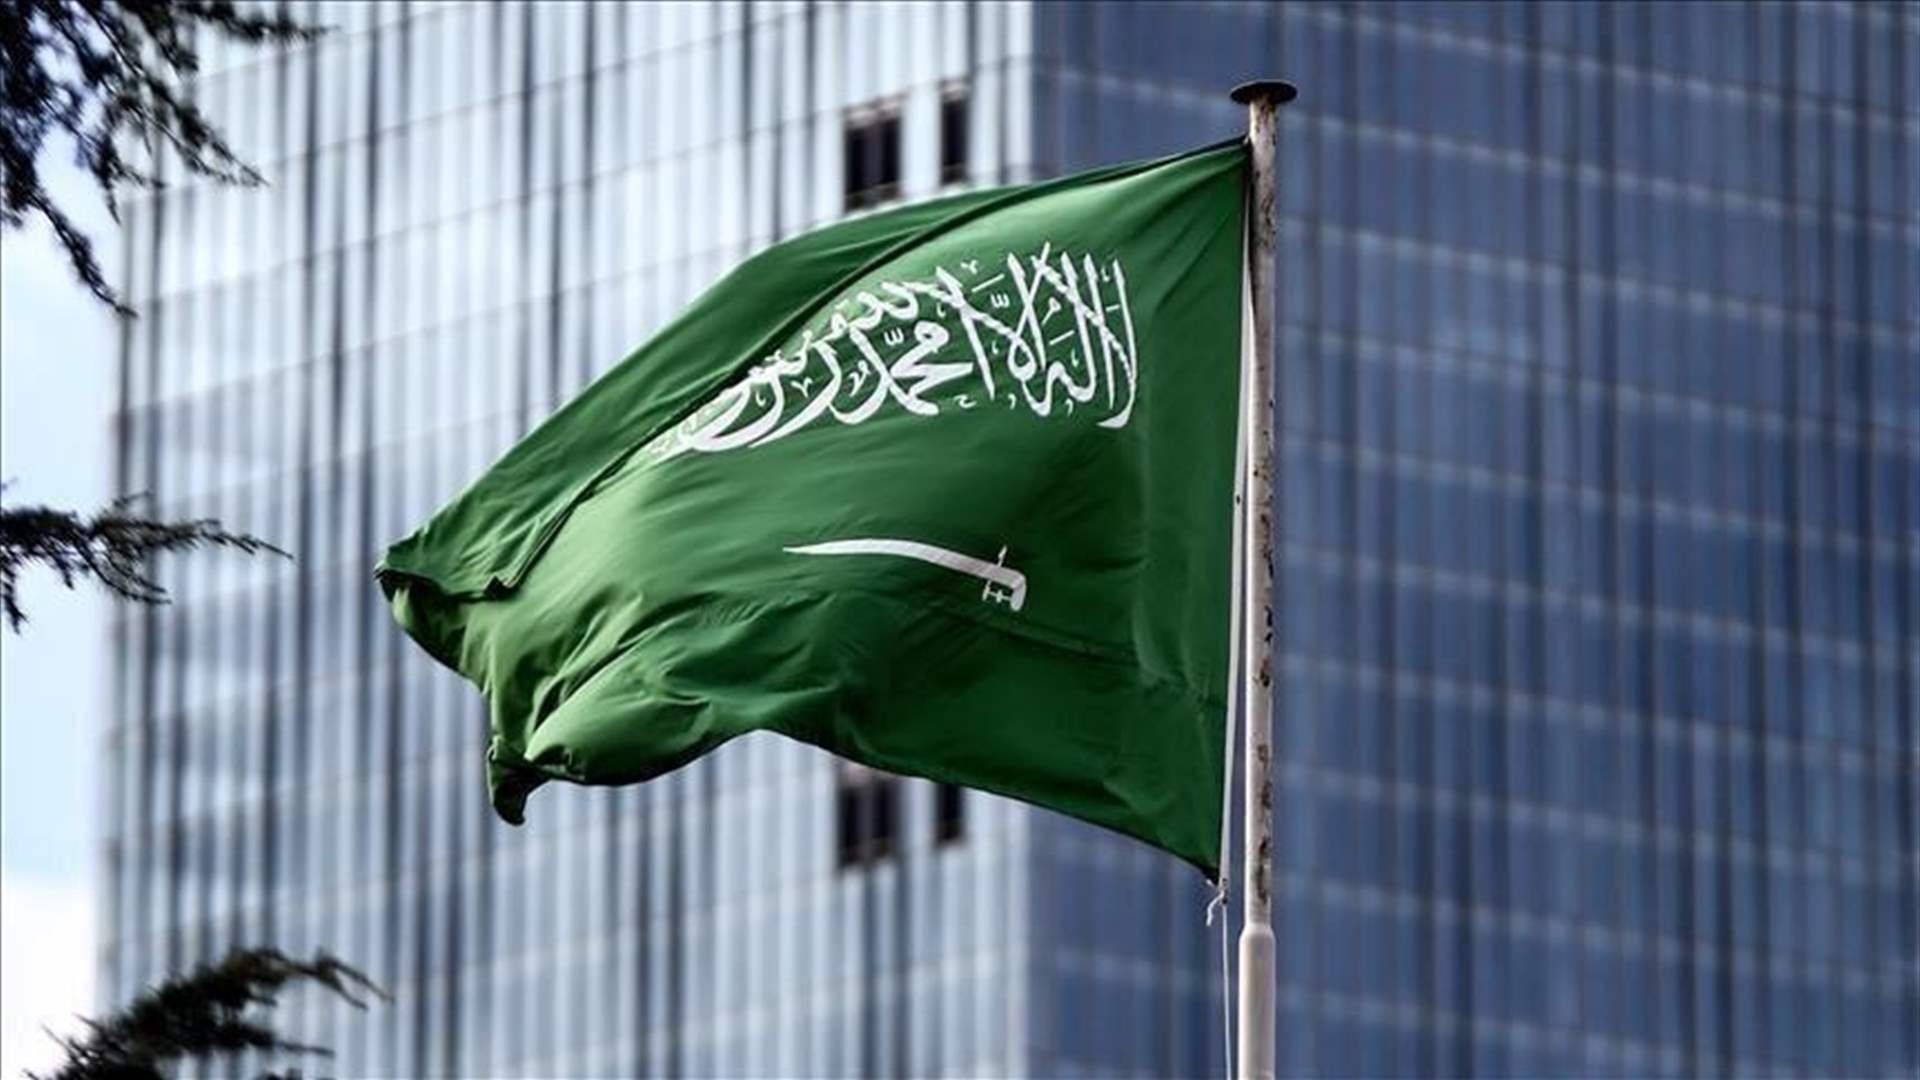 السعودية تمدد خفض إنتاجها النفطي بمليون برميل في اليوم حتى حزيران المقبل